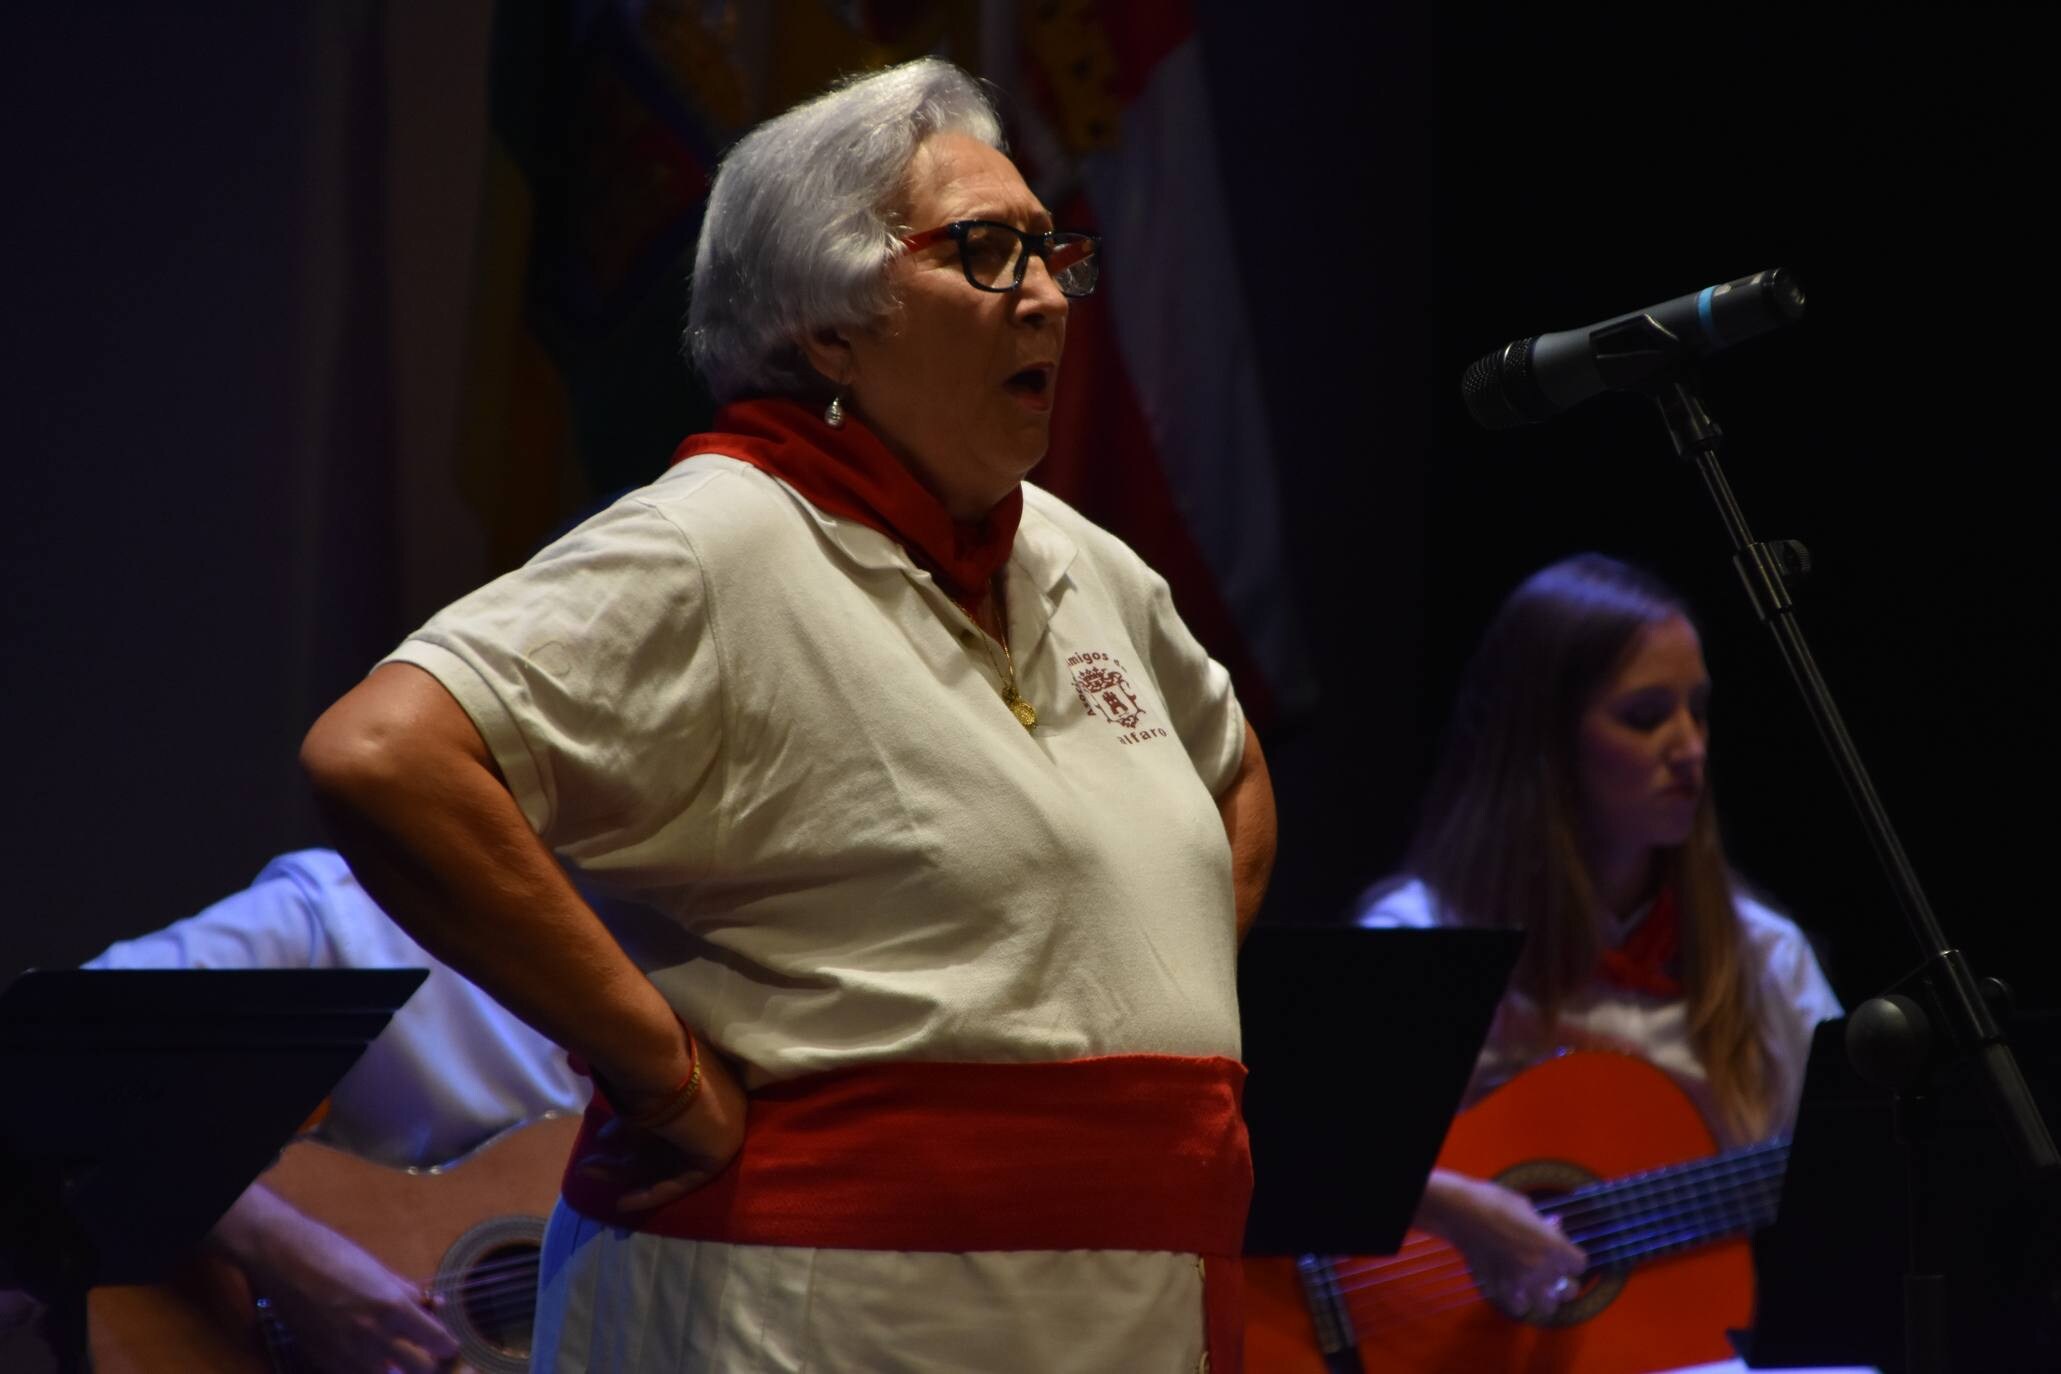 Los joteros veteranos cantan en el festival de Calahorra